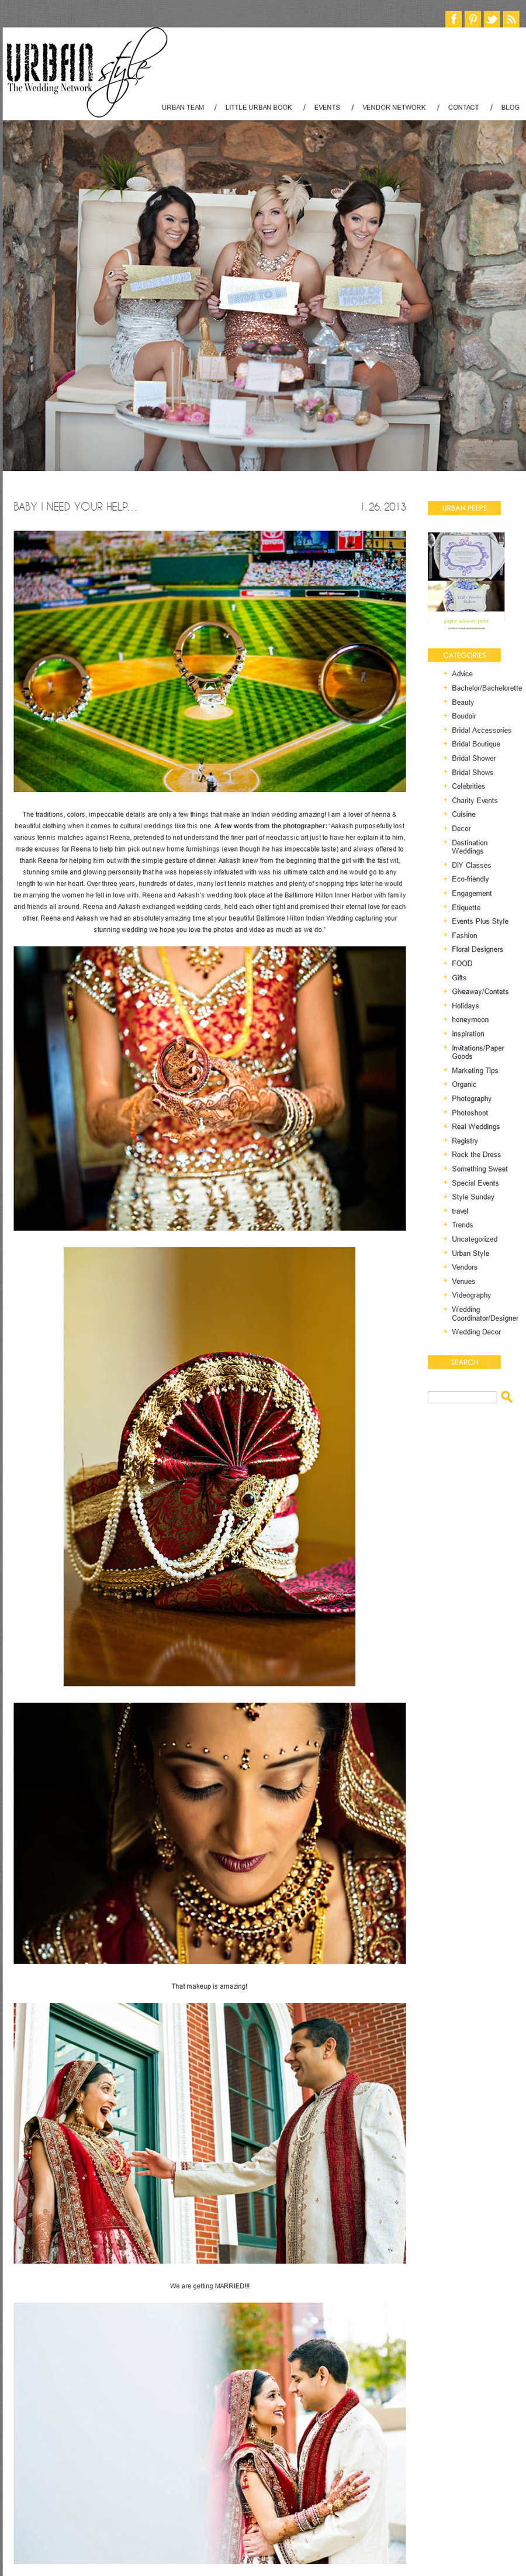 Baltimore Indian Wedding, Baltimore Indian Wedding Published On Urban Style!